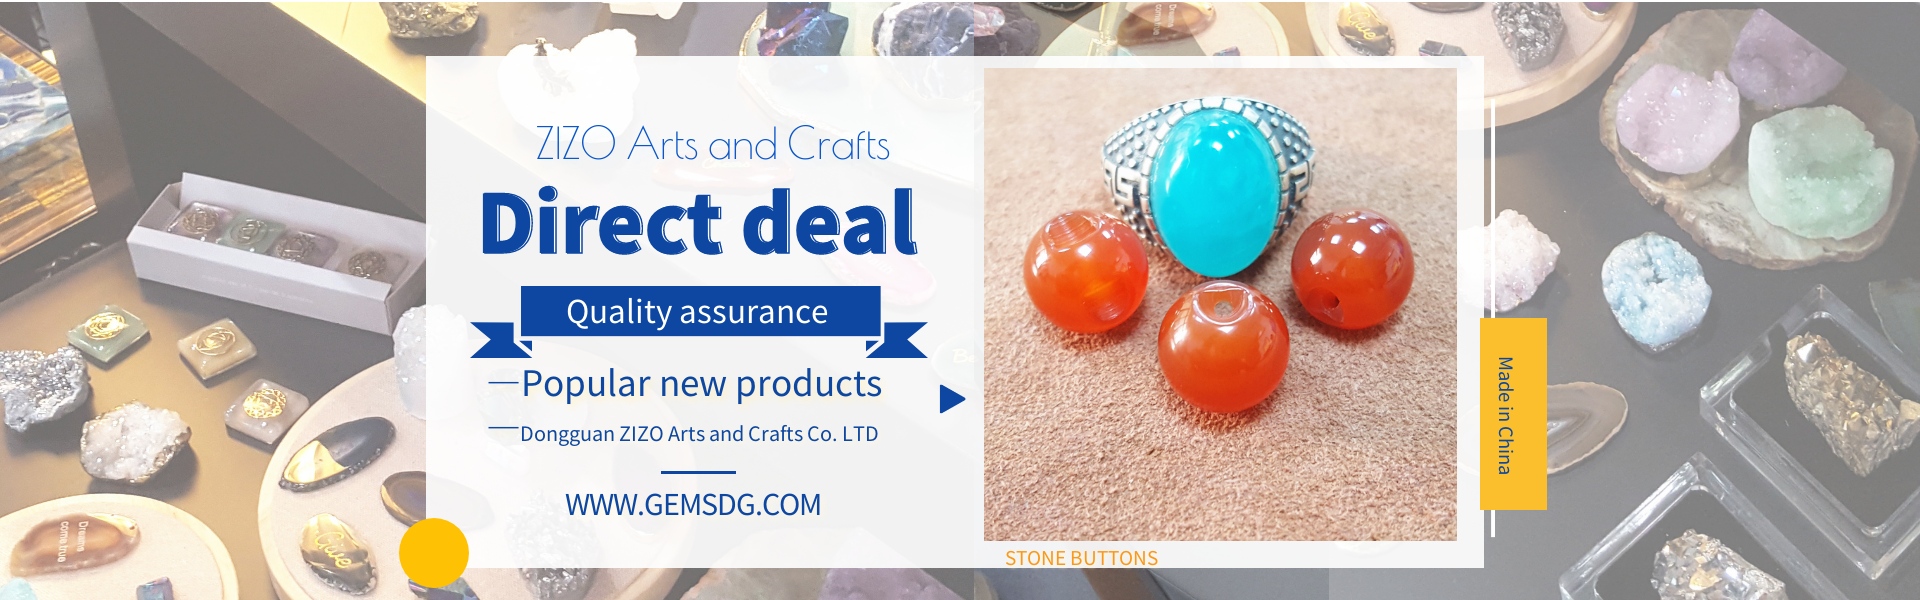 Gemas, botões de pedra,jade,Dongguan ZIZO Arts and Crafts Co. LTD